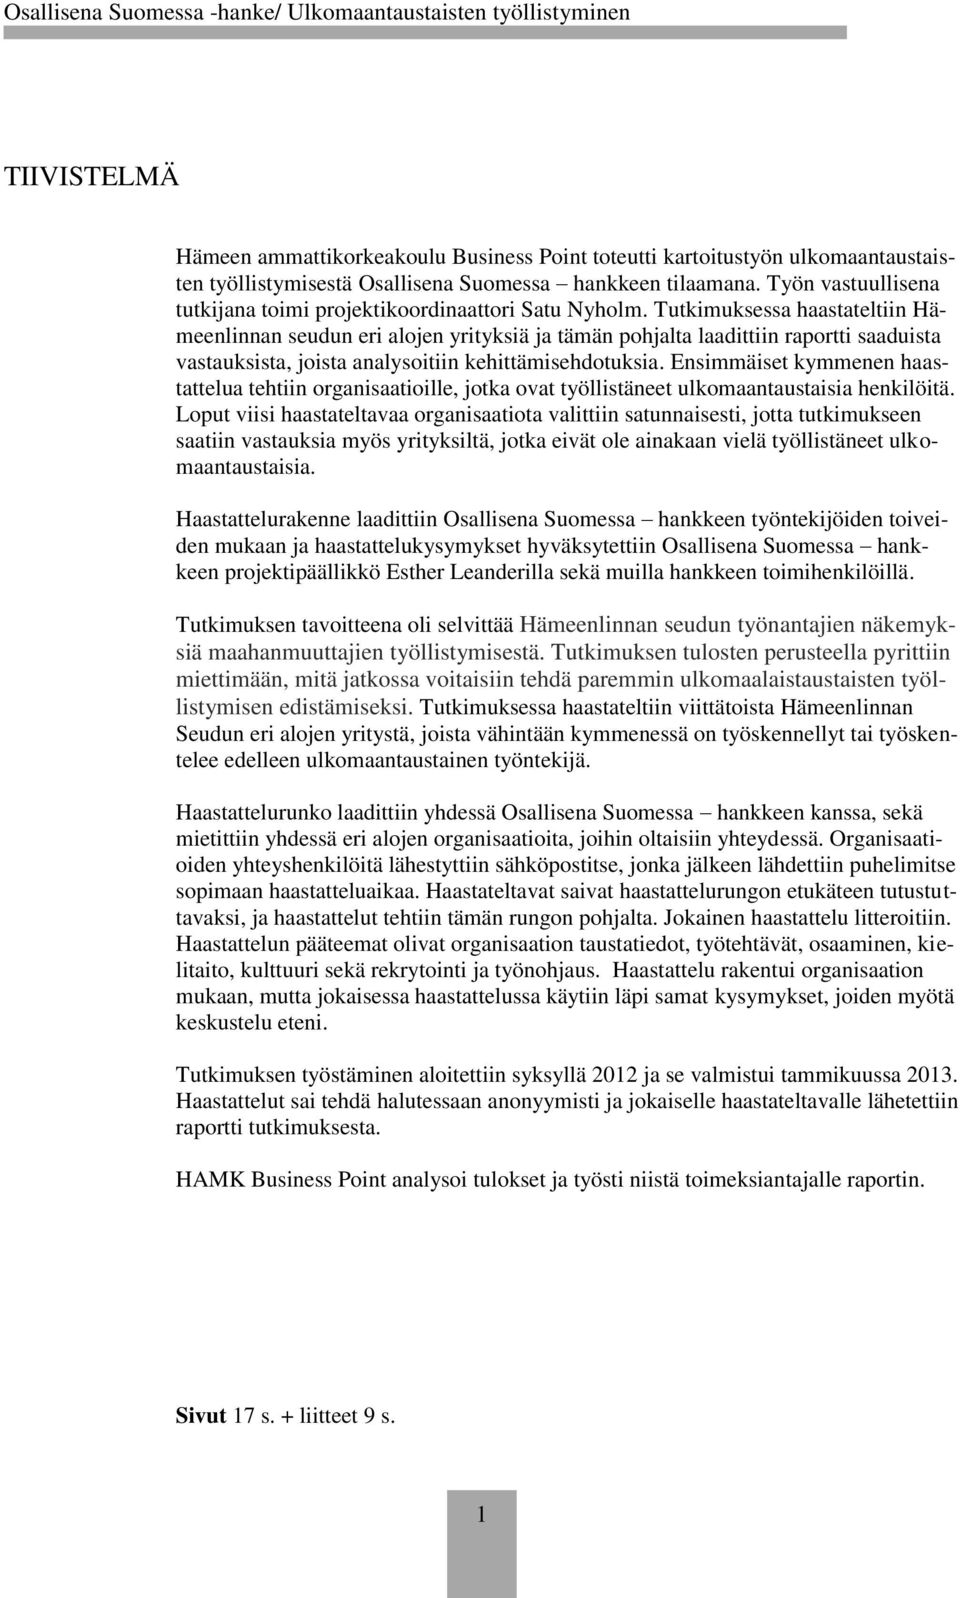 Tutkimuksessa haastateltiin Hämeenlinnan seudun eri alojen yrityksiä ja tämän pohjalta laadittiin raportti saaduista vastauksista, joista analysoitiin kehittämisehdotuksia.